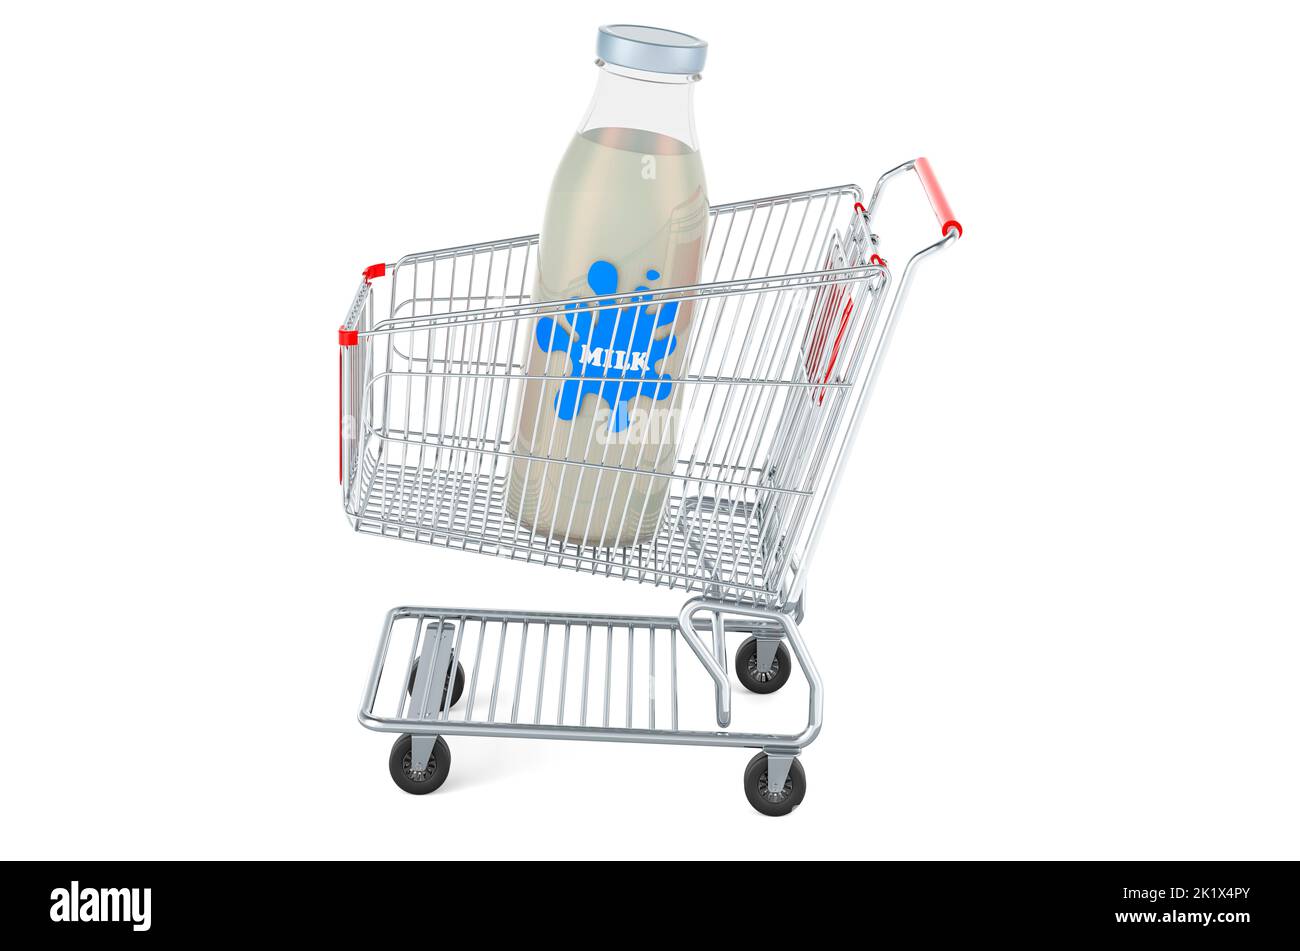 Botella de leche de cristal dentro de la cesta de la compra. Reproducción 3D aislada sobre fondo blanco Foto de stock